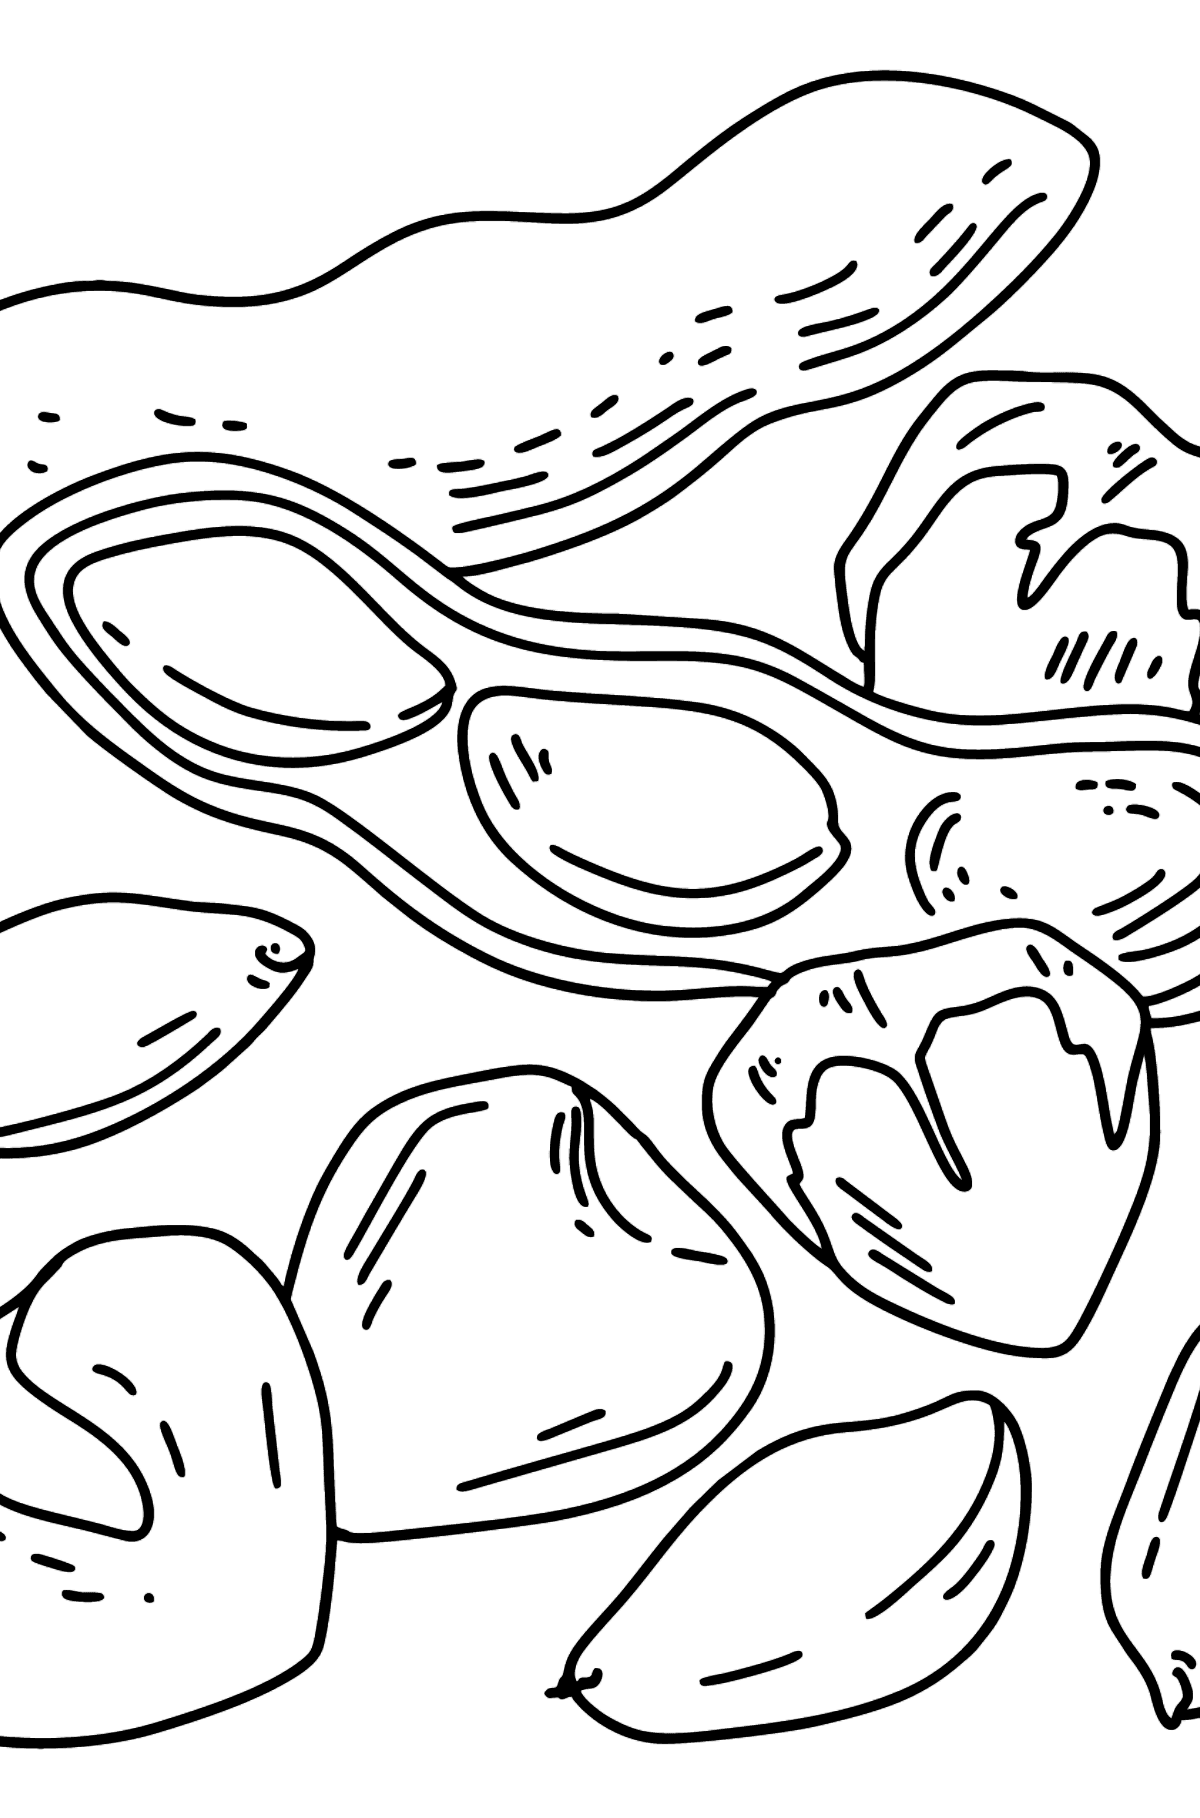 Tegning til farvning nødder - jordnødder og hasselnødder - Tegninger til farvelægning for børn